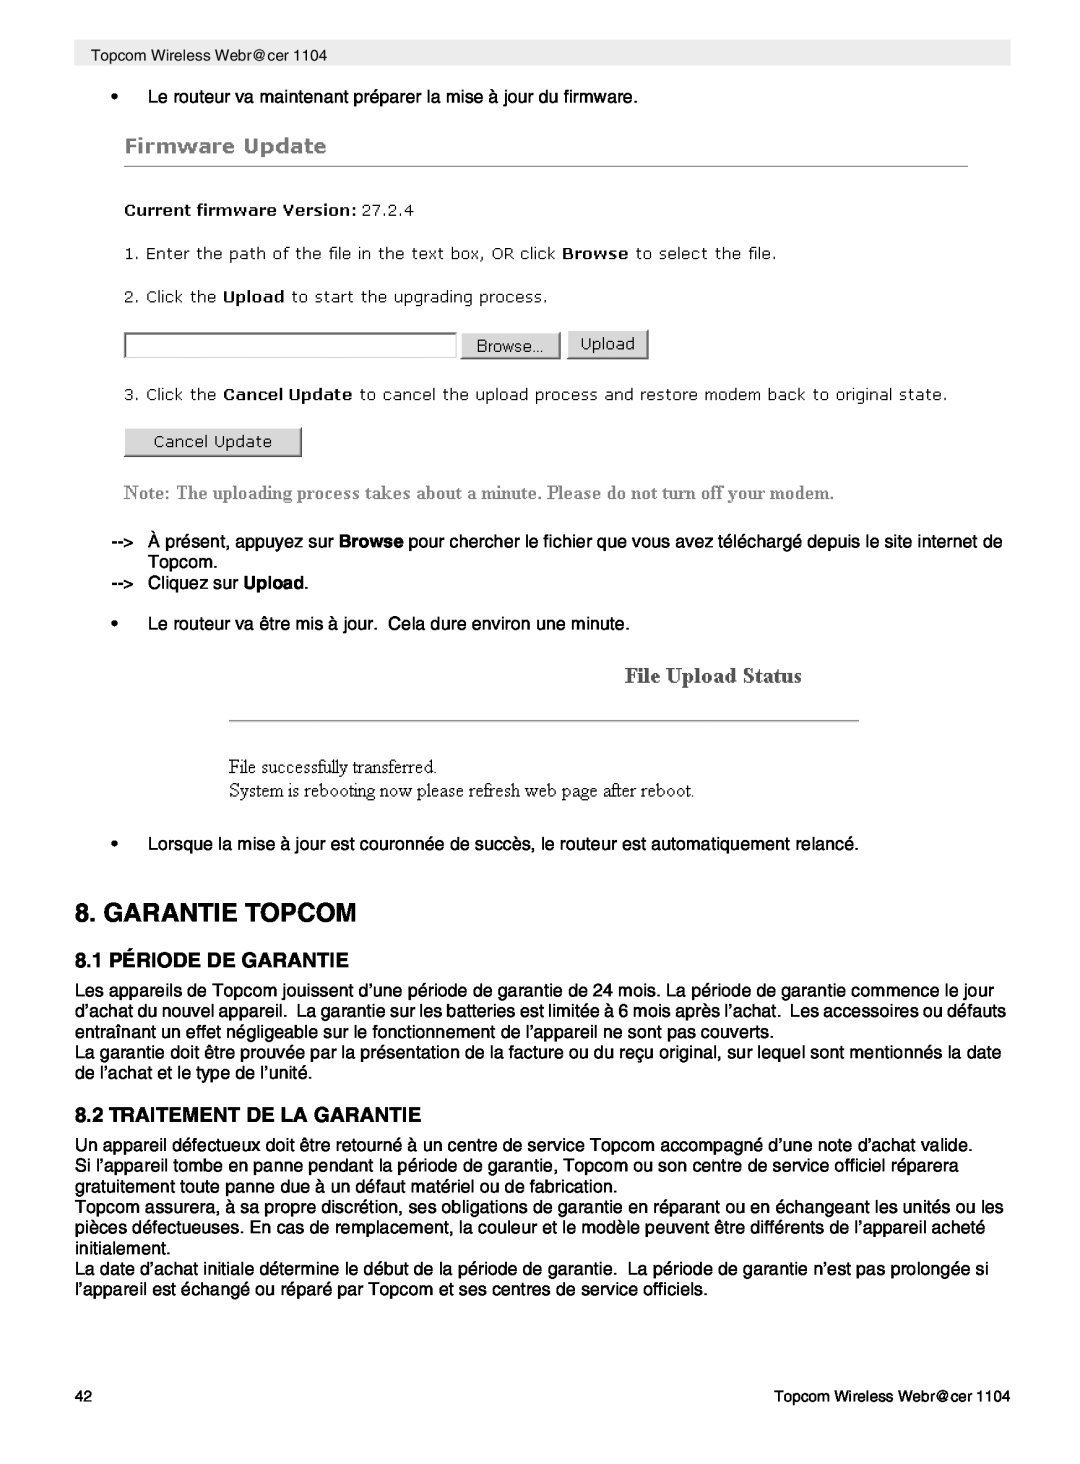 Topcom 1104 manual do utilizador Garantie Topcom, 8.1 PÉRIODE DE GARANTIE, Traitement De La Garantie 